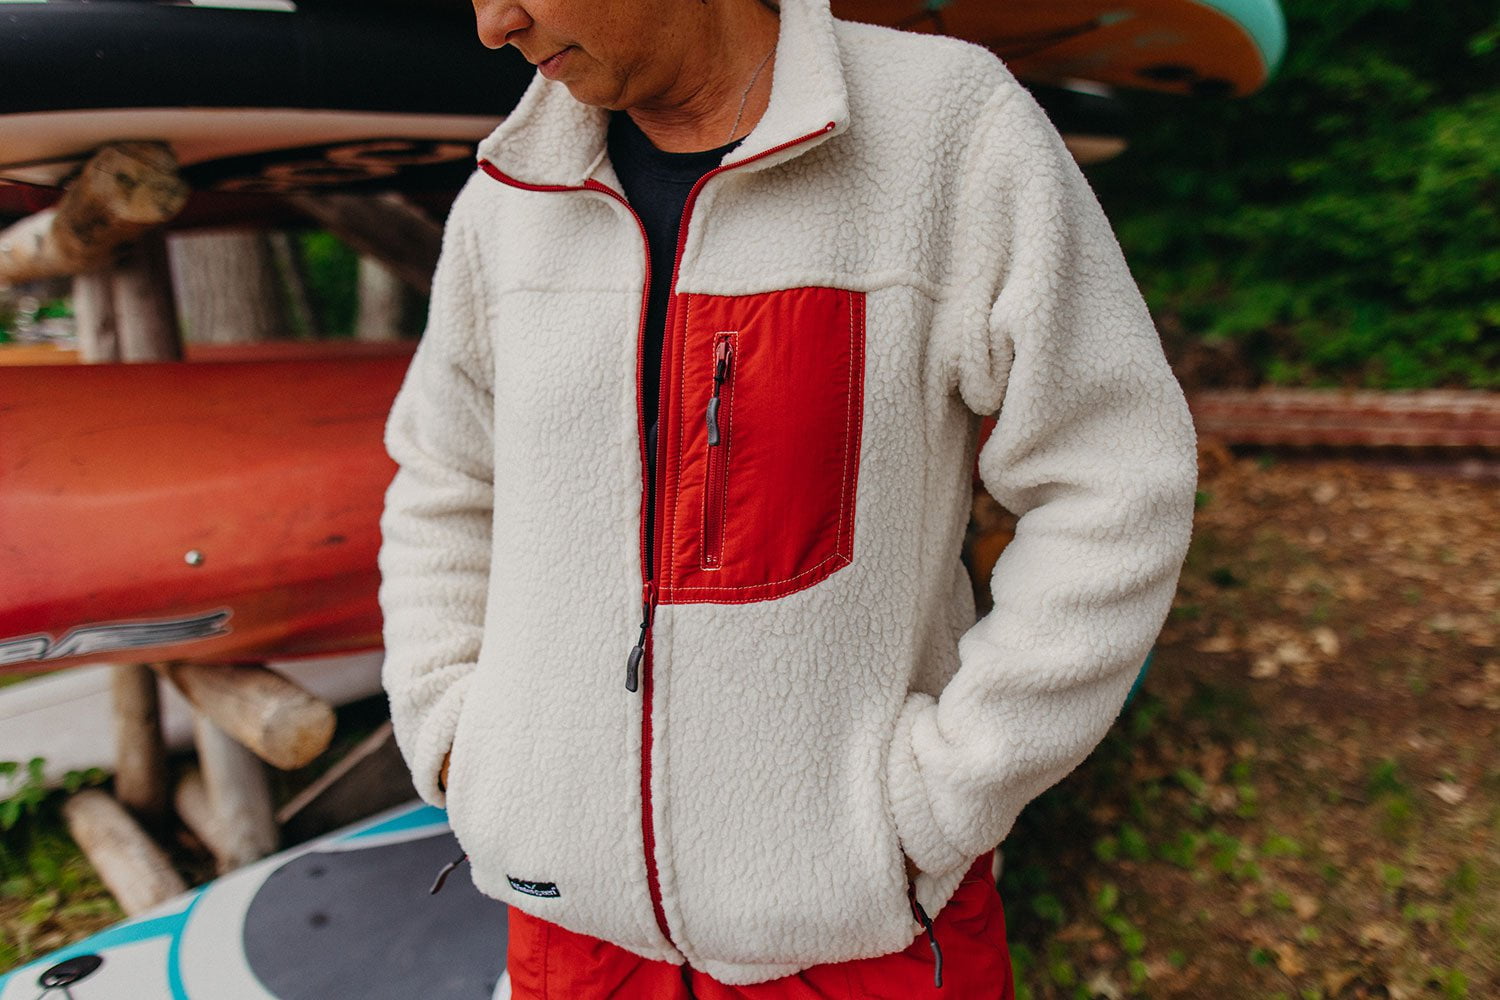 Patagonia Men's Shearling Fleece Jacket